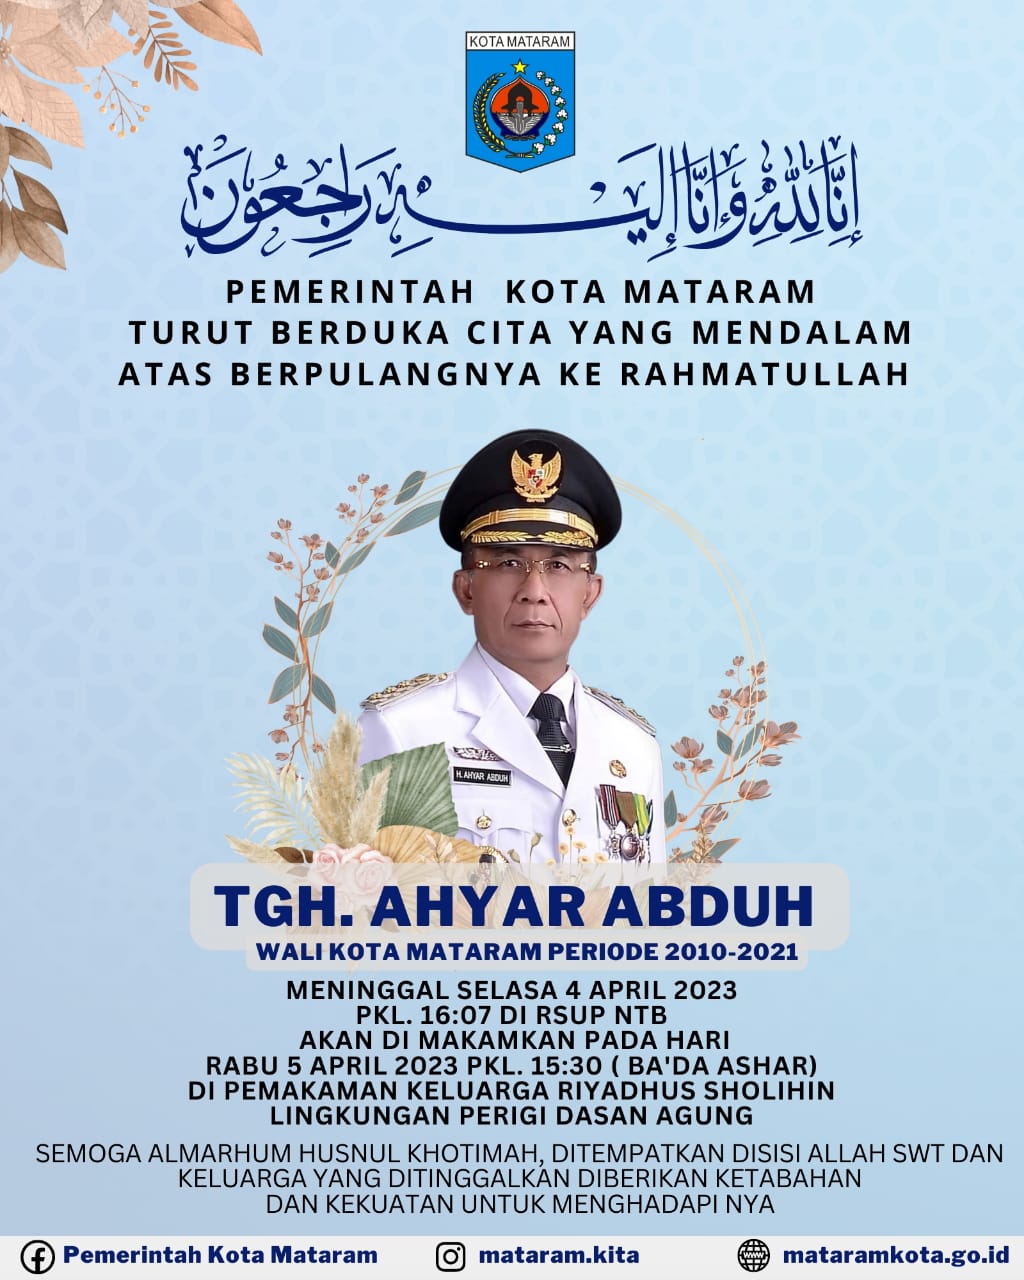 Pemerintah Kota Mataram turut berduka cita atas berpulangnya ke Rahmatullah, TGH Ahyar Abduh